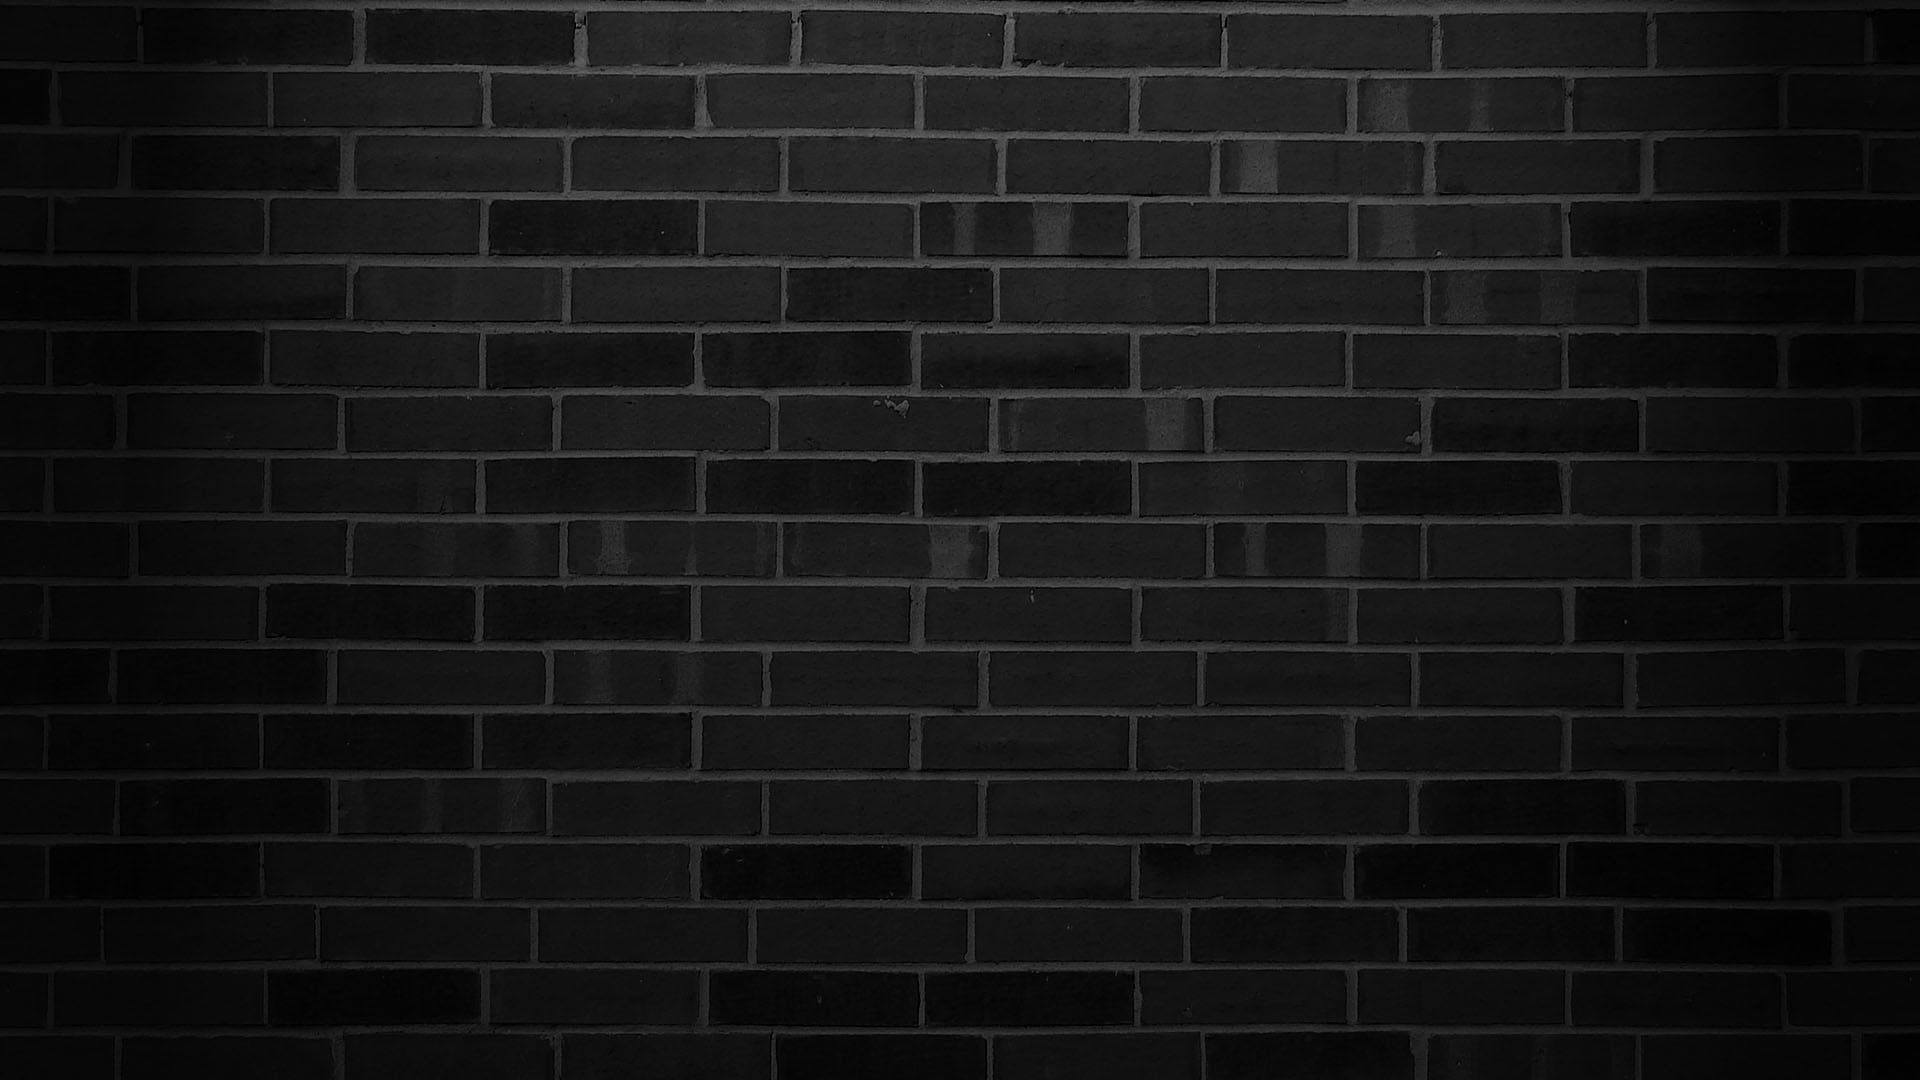 minimalism pattern monochrome bricks walls, architecture, backgrounds